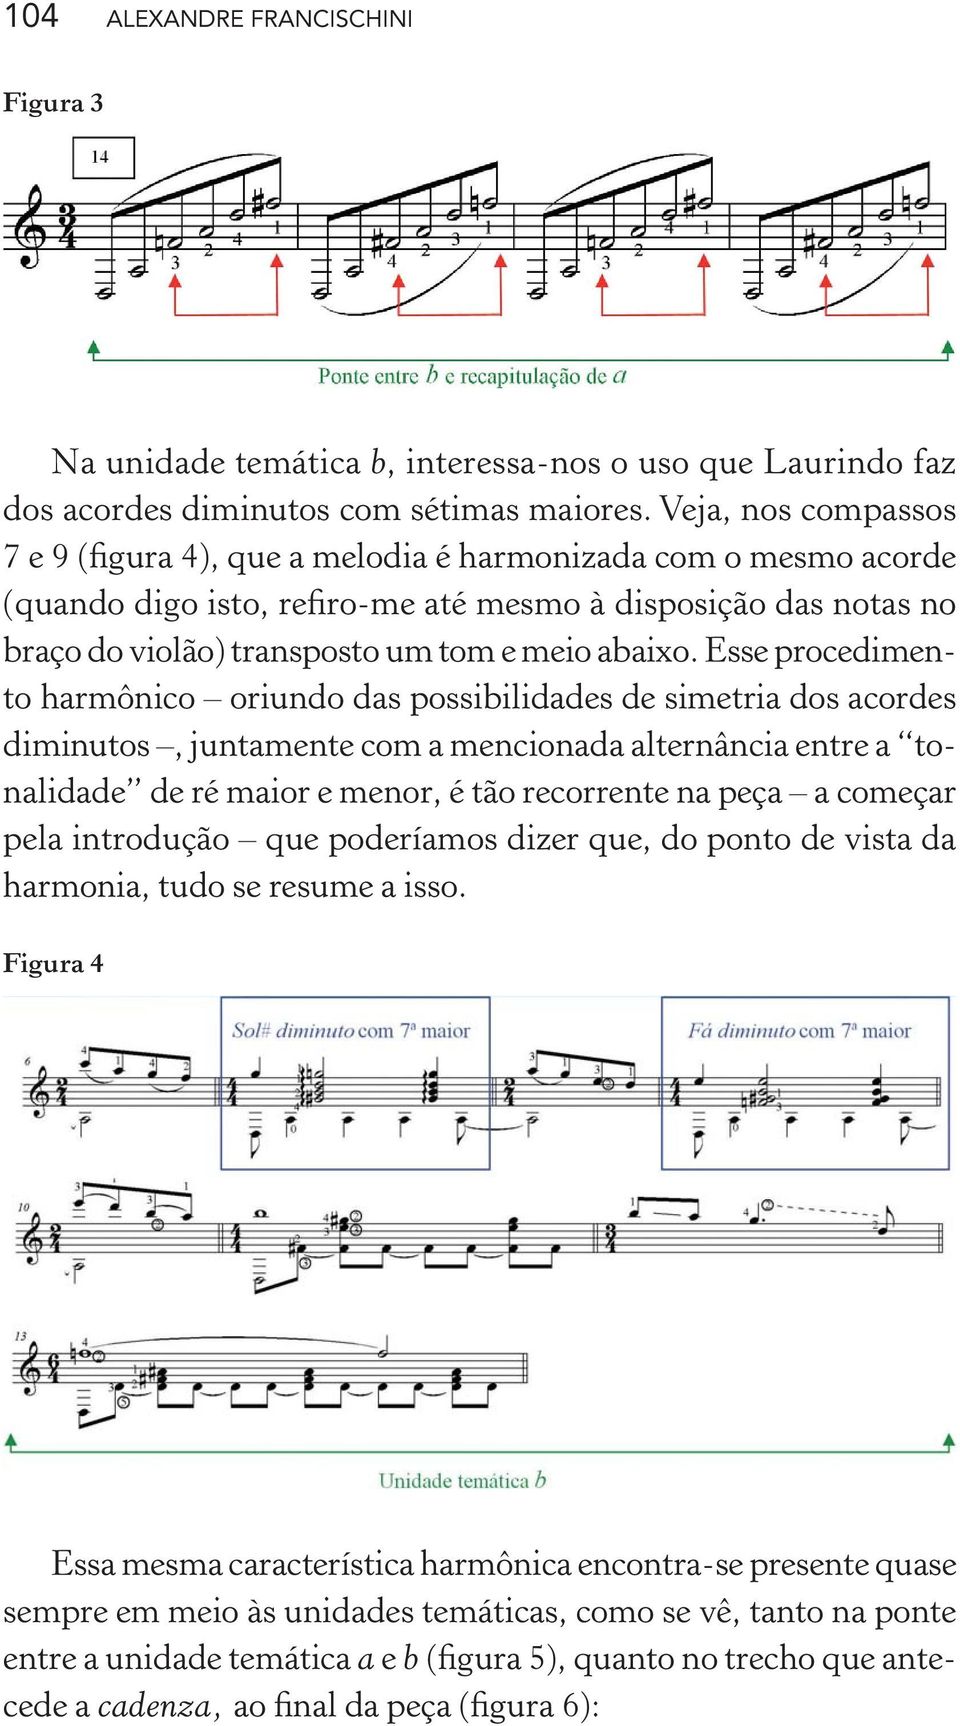 Esse procedimento harmônico oriundo das possibilidades de simetria dos acordes diminutos, juntamente com a mencionada alternância entre a tonalidade de ré maior e menor, é tão recorrente na peça a